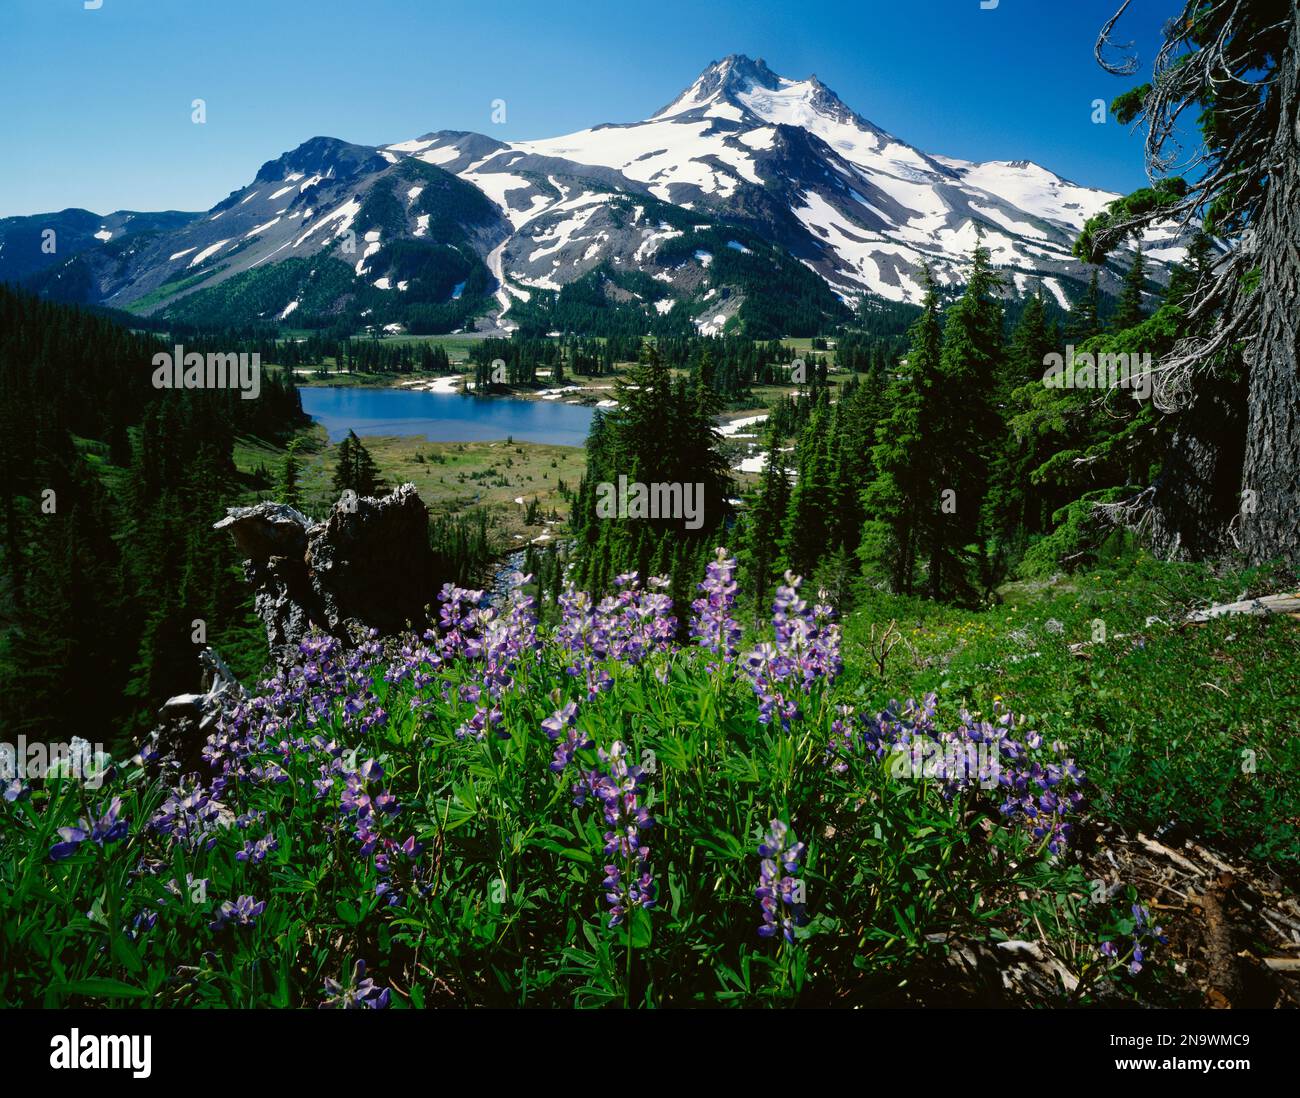 Wildblumen in Bloom am Snow-Capped Mountain, Mount Jefferson Wilderness, Oregon, USA; Oregon, Vereinigte Staaten von Amerika Stockfoto